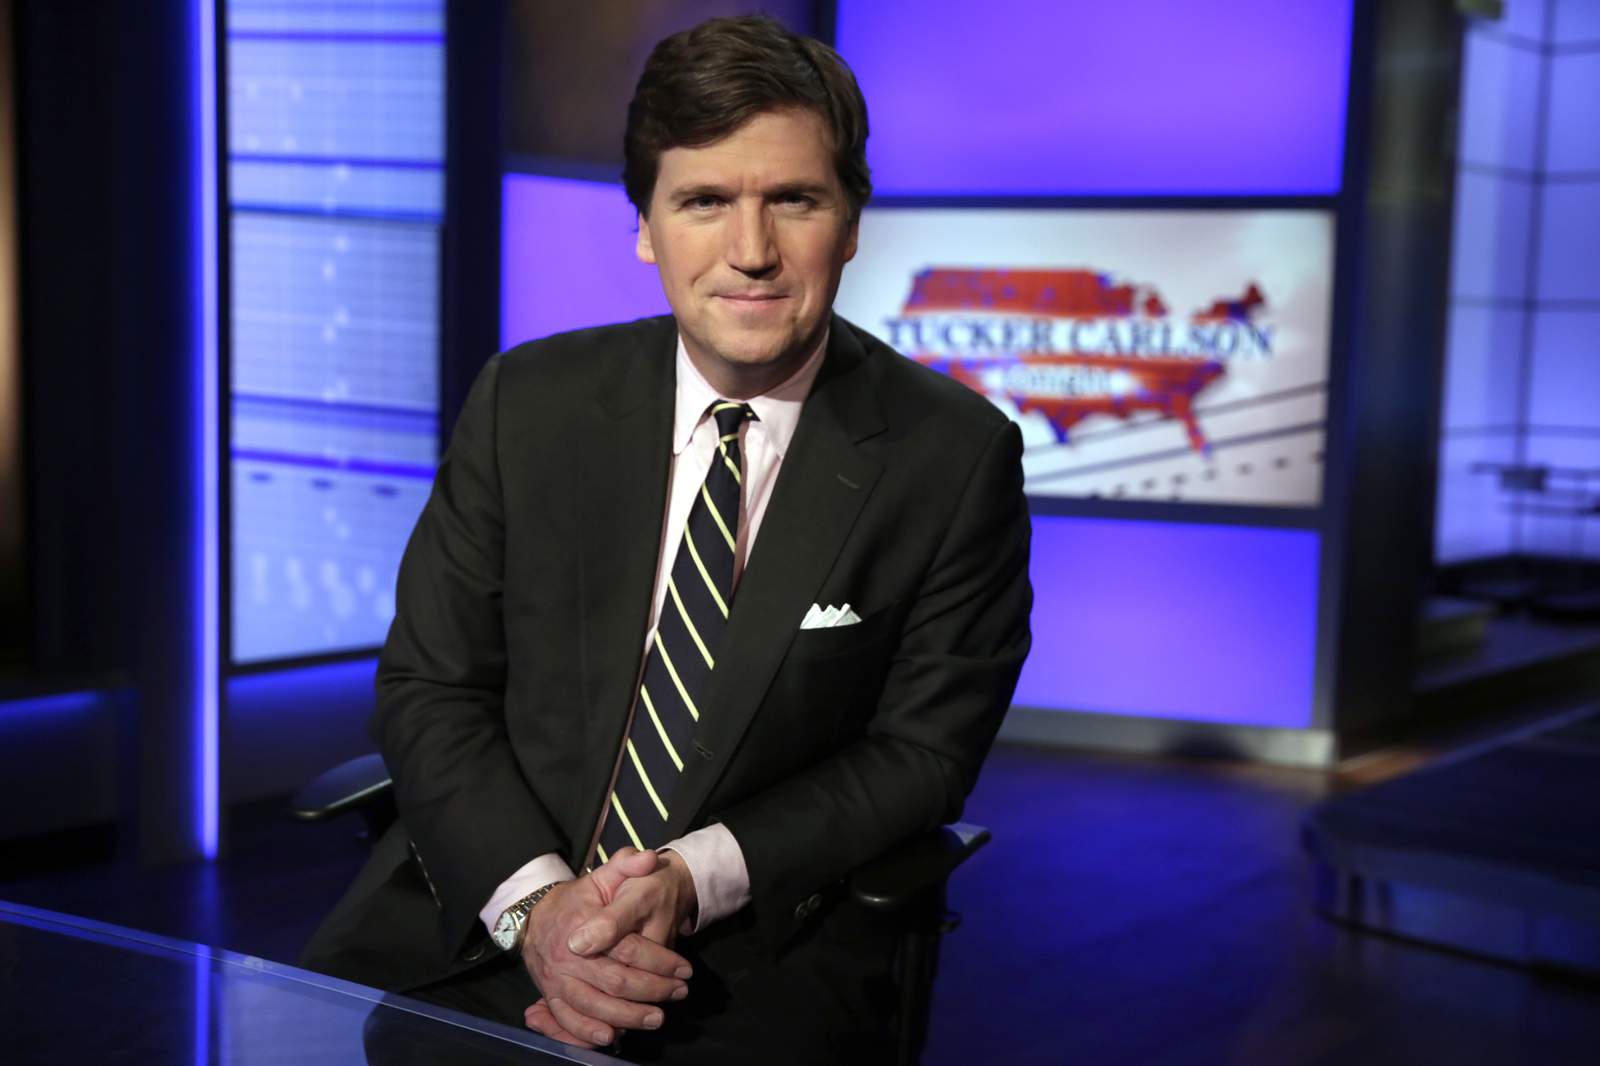 Fox's Tucker Carlson takes heat for Kenosha commentary